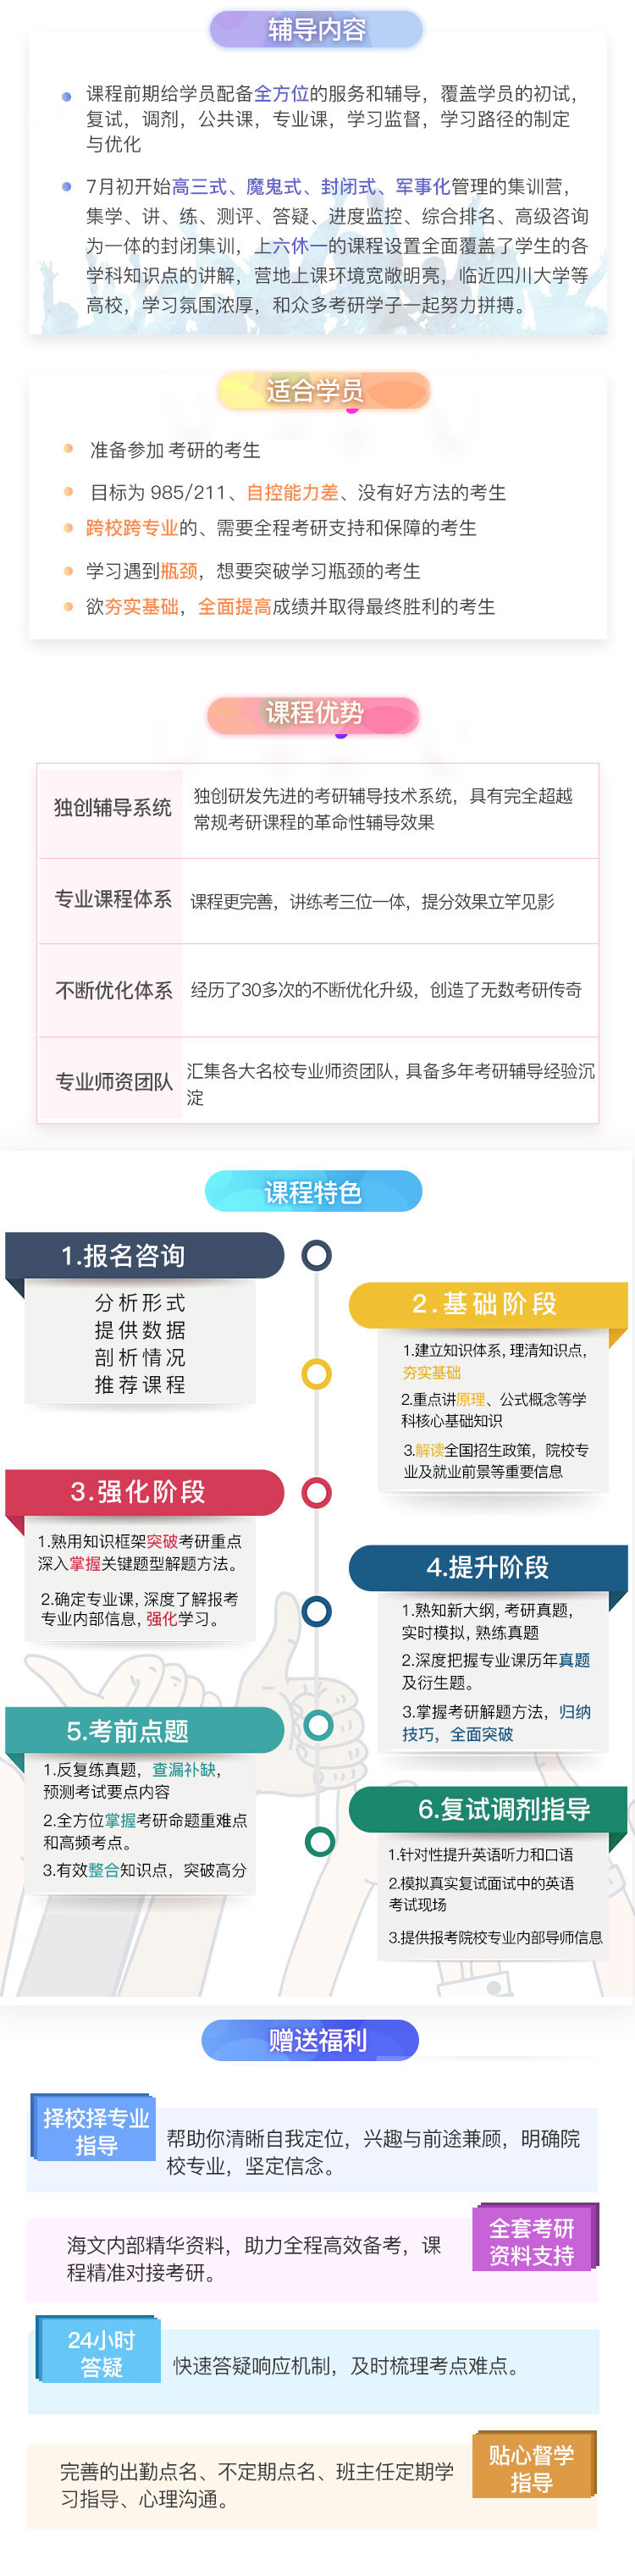 四川法学考研半年超级特训营课程（课程图示）